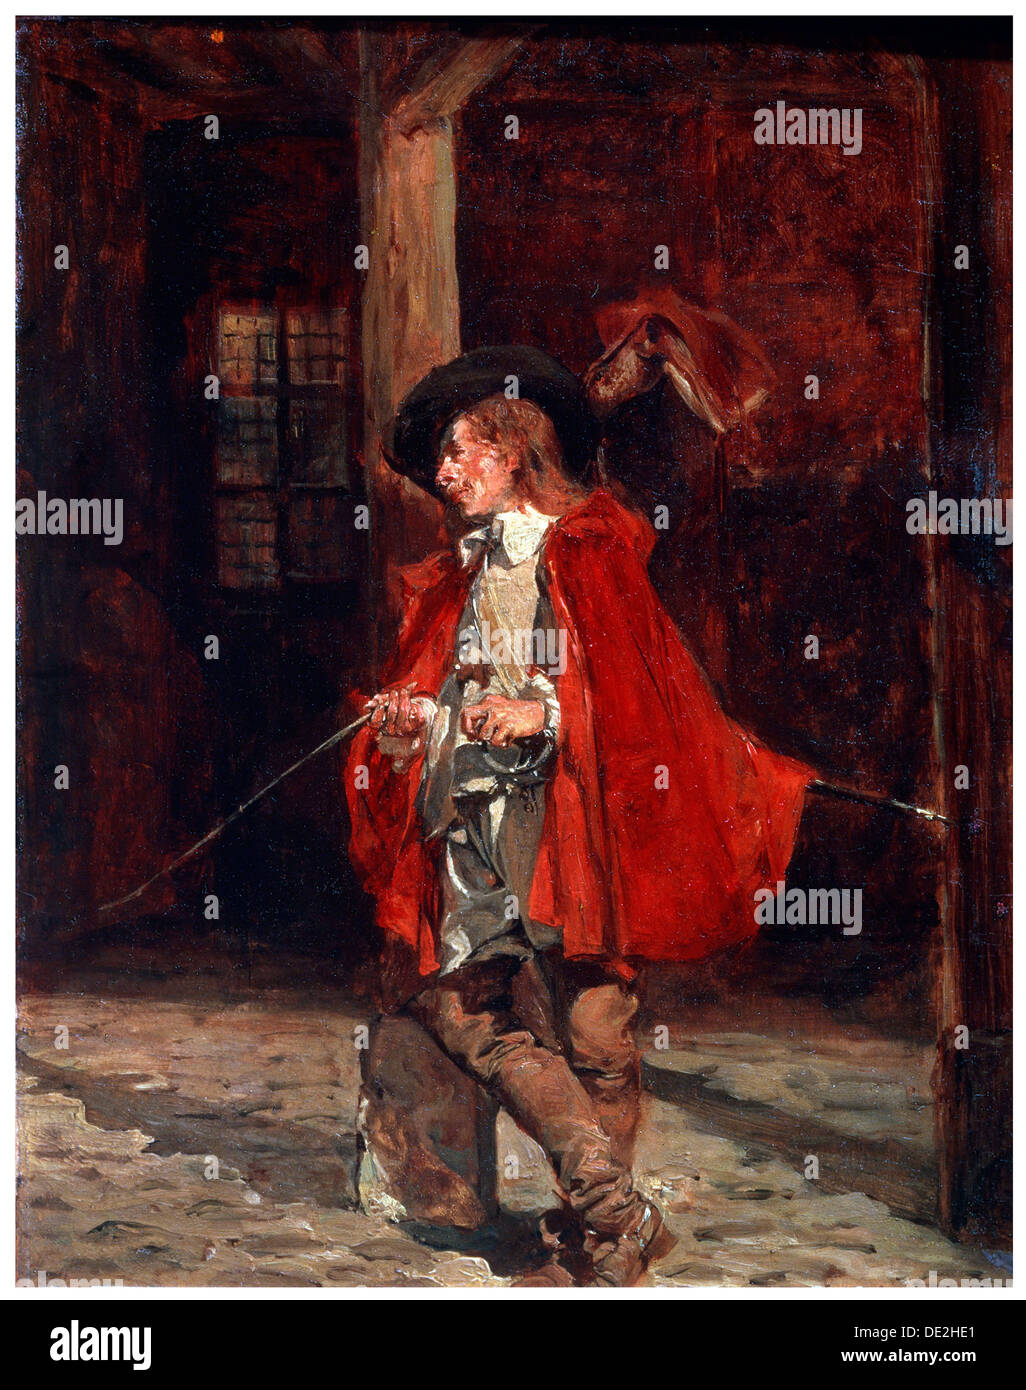 'Bretteur (Swordsman) in a Red Cloak', 19th century. Artist: Jean Louis Ernest Meissonier Stock Photo